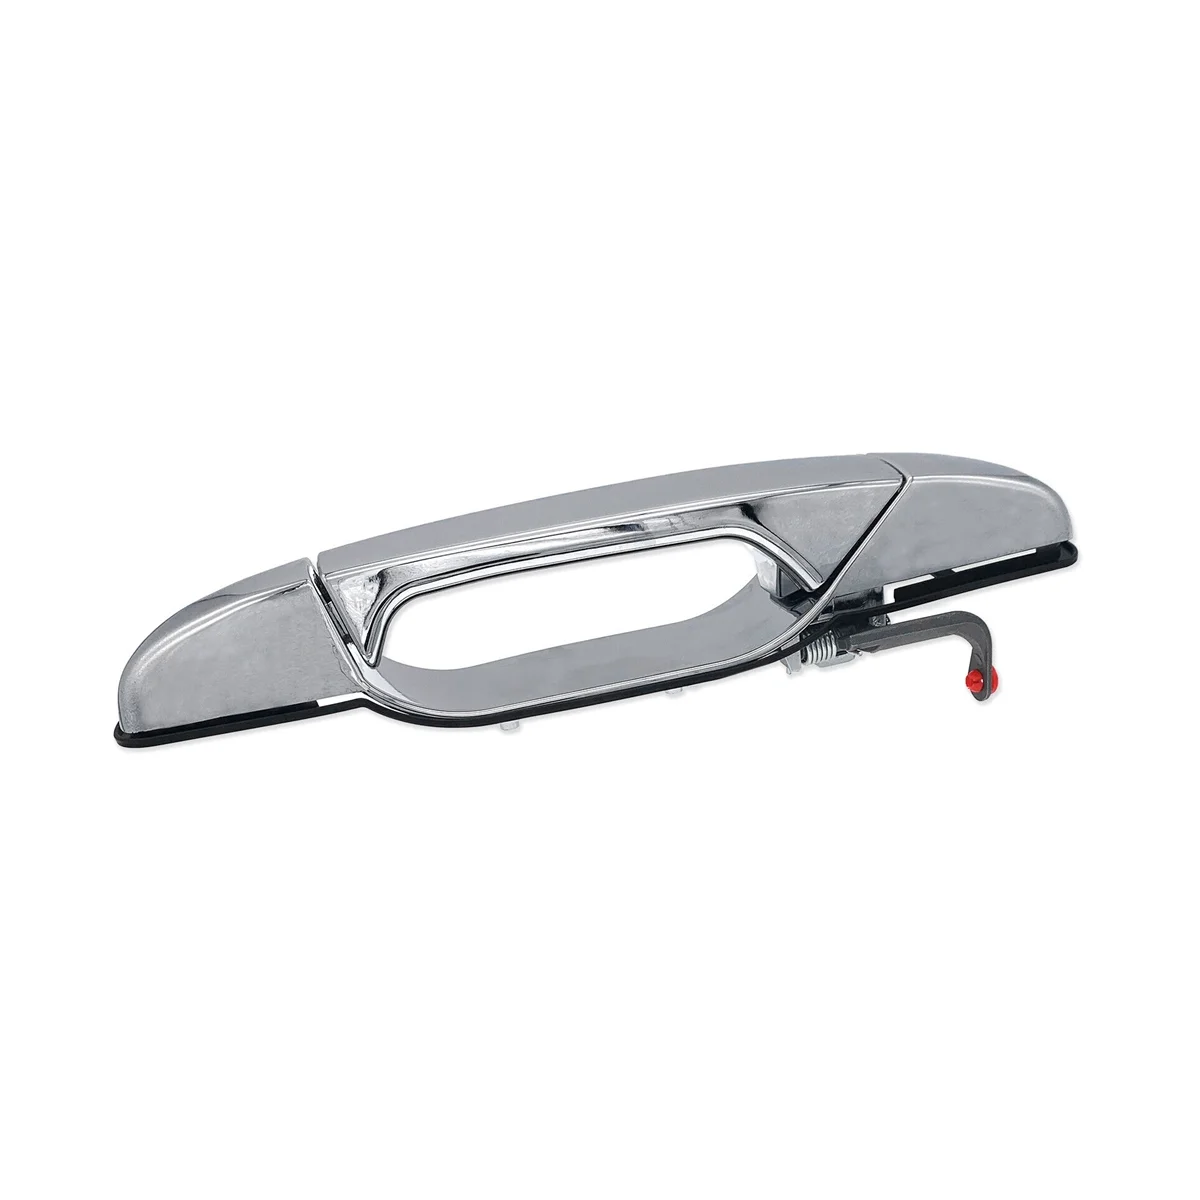 

Автомобильная внешняя дверная ручка для CADILLAC CHEVROLET GMC, задняя левая внешняя дверная ручка, хромированная 20828258 22738721